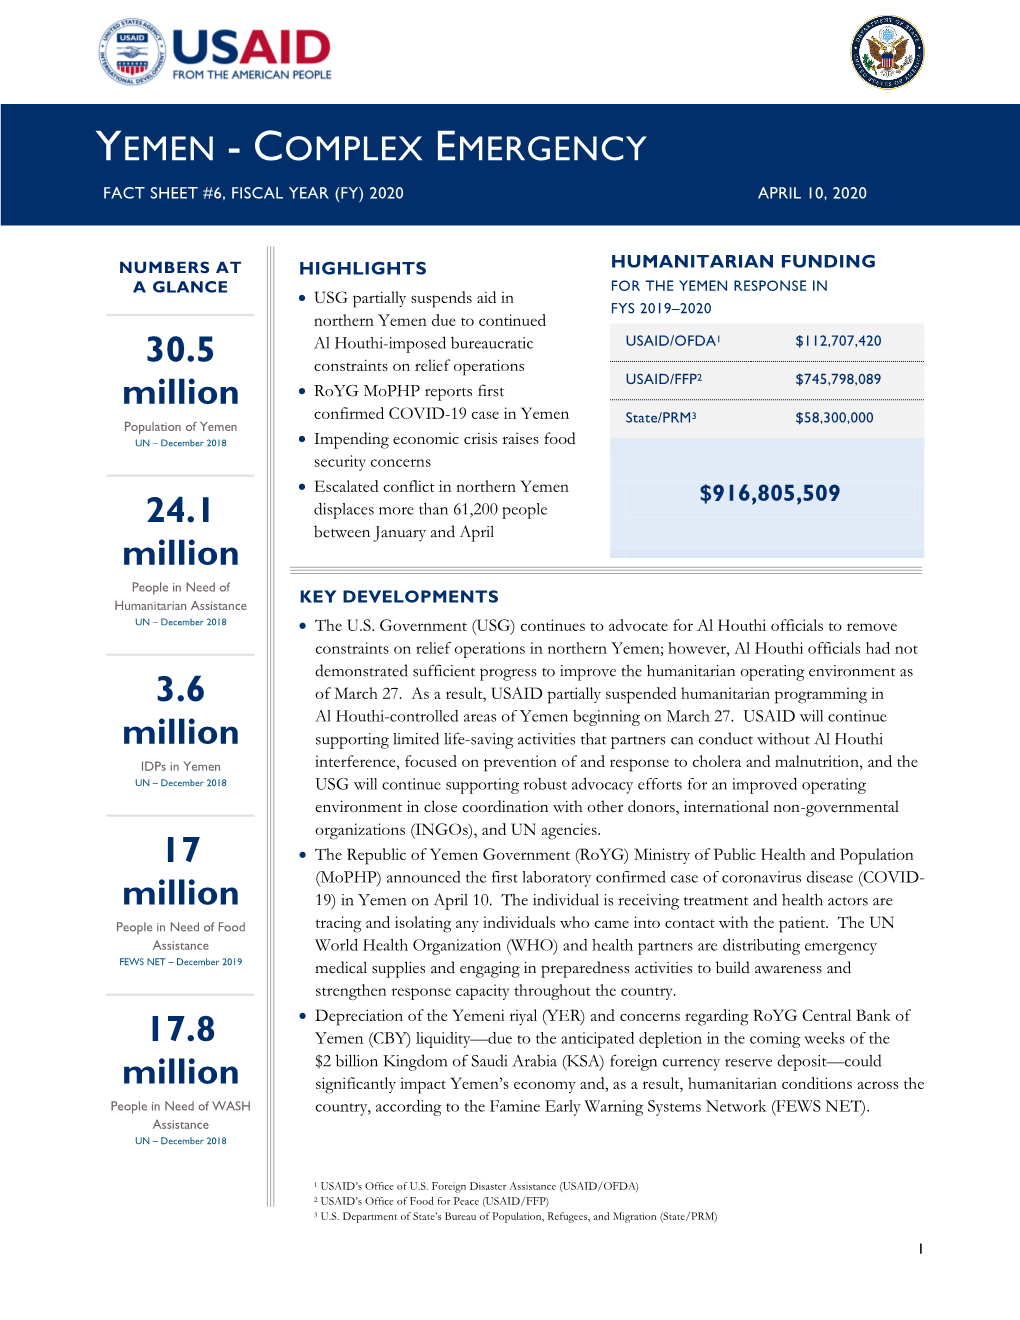 USG Yemen Complex Emergency Fact Sheet #6